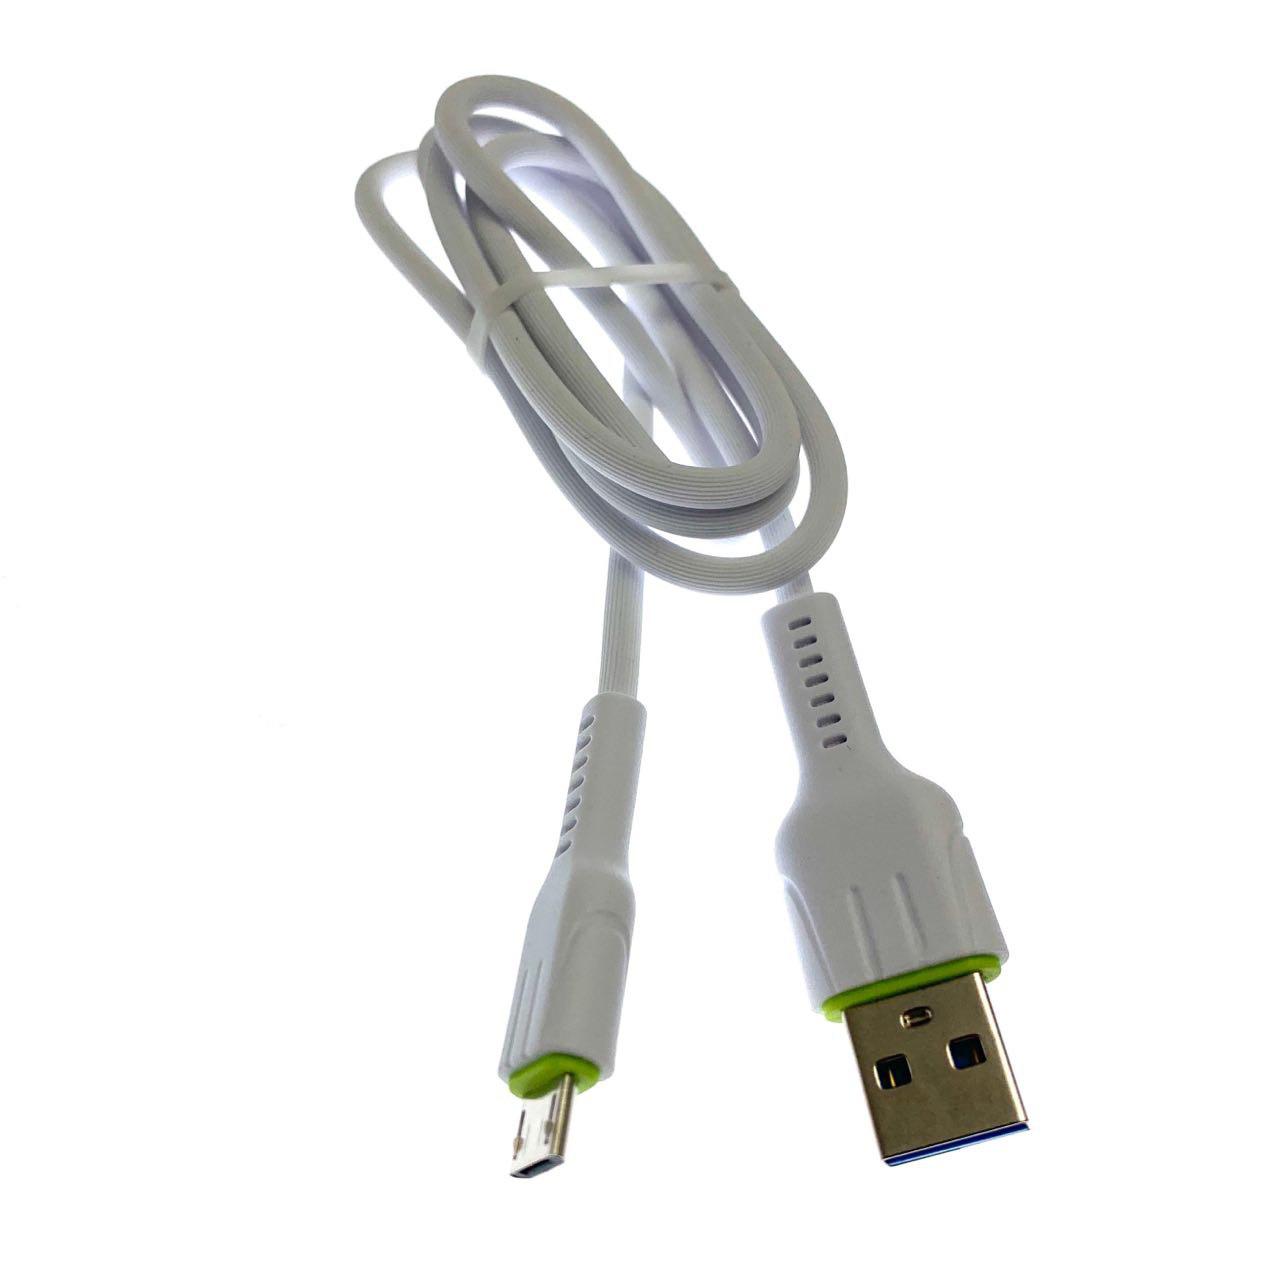 USB Дата-кабель "R30" Micro USB в силиконовой оболочке, длина 1 метр, цвет белый, полоски.